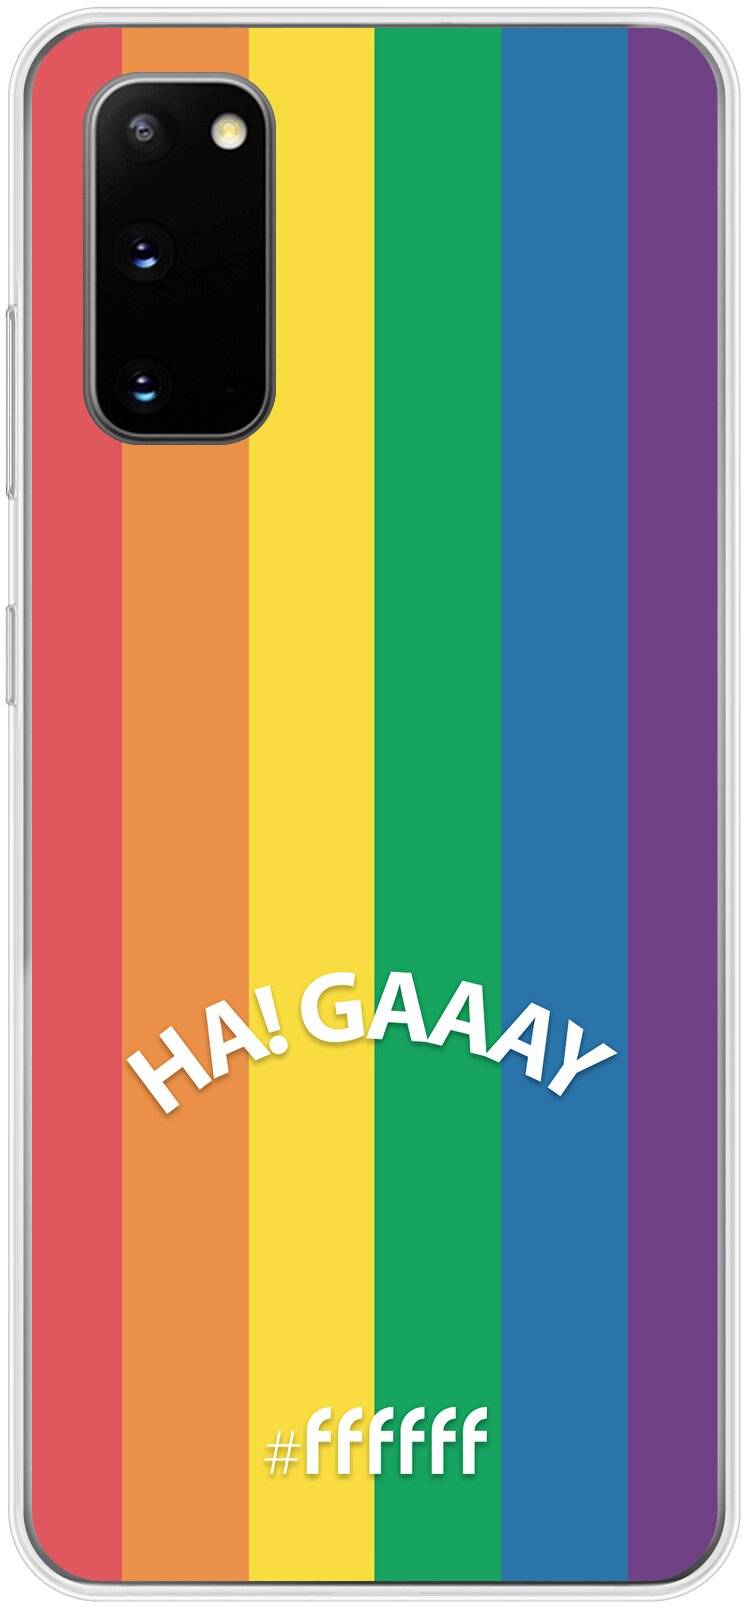 #LGBT - Ha! Gaaay Galaxy S20